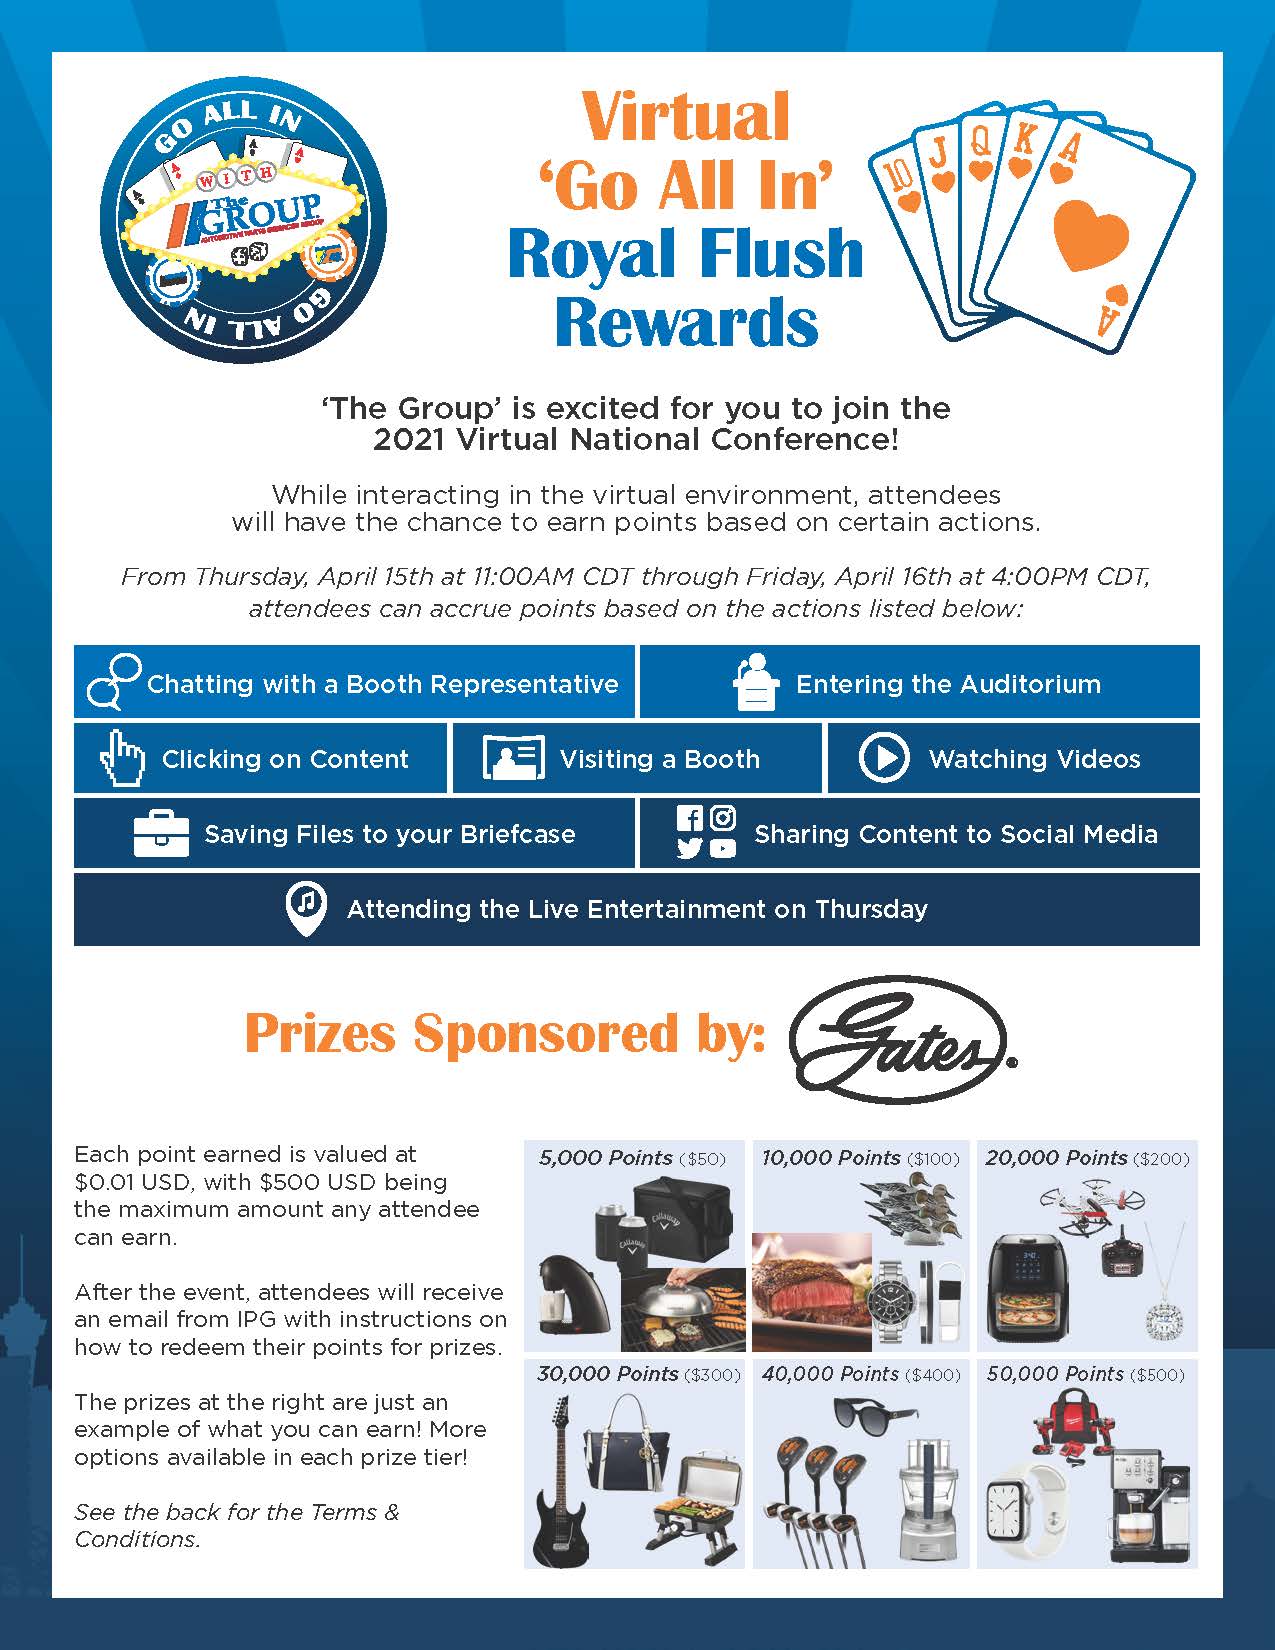 Royal Flush Rewards